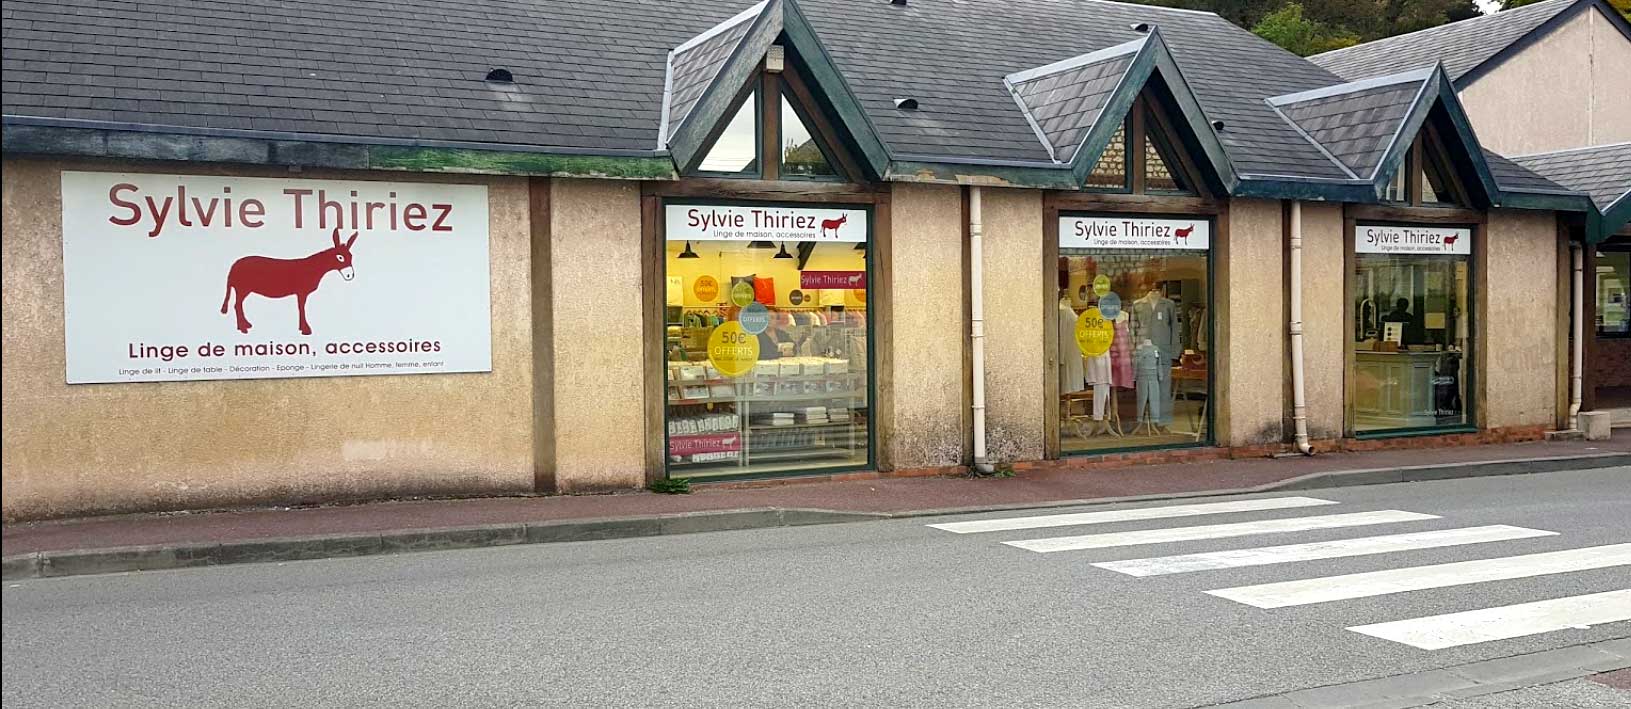 Le magasin Sylvie Thiriez à Saint-Pierre du Vauvray